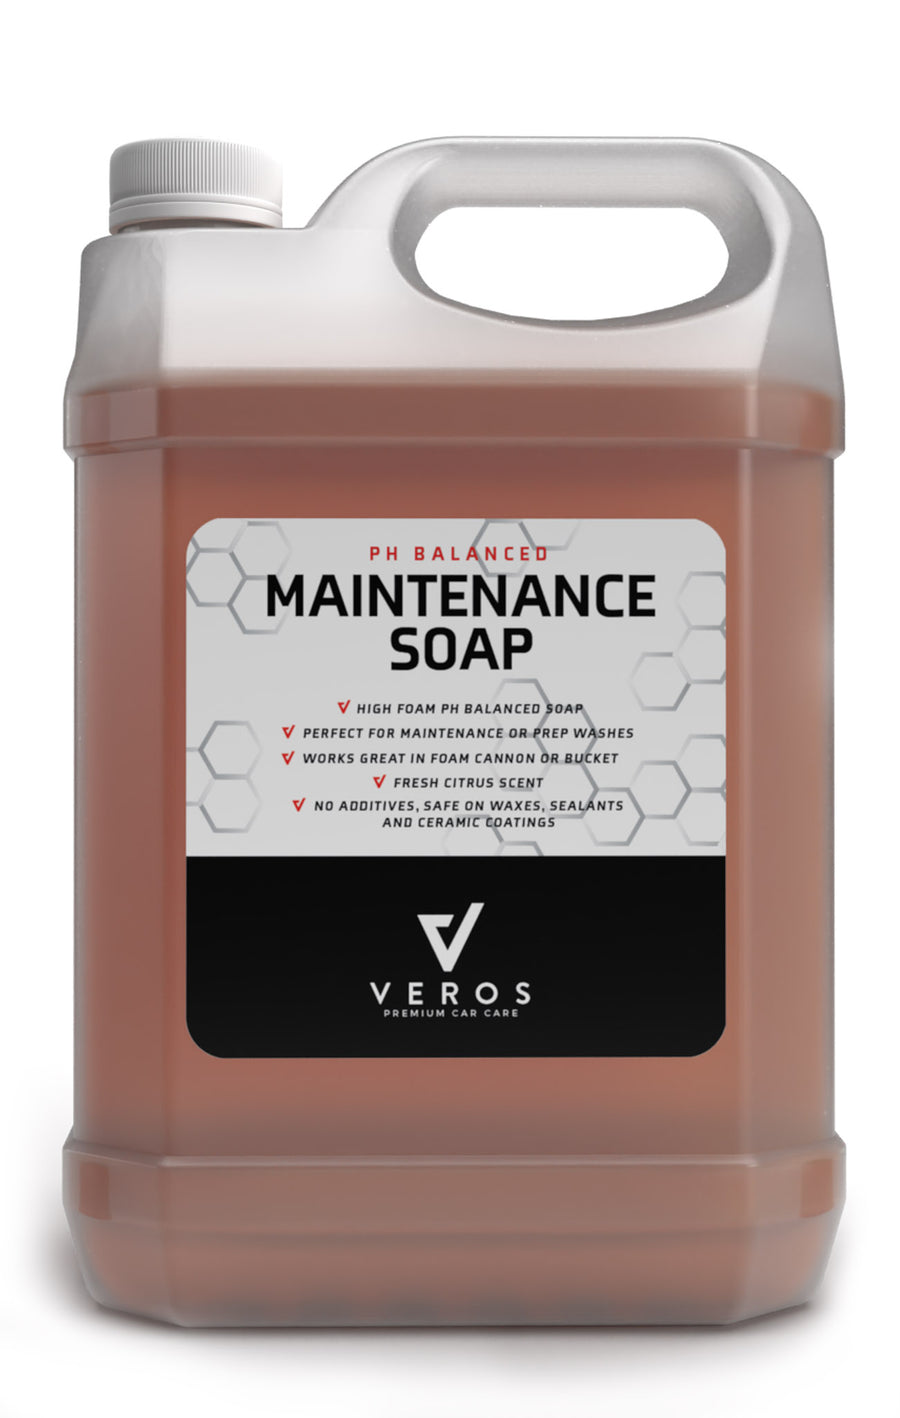 PH Balanced Maintenance Soap